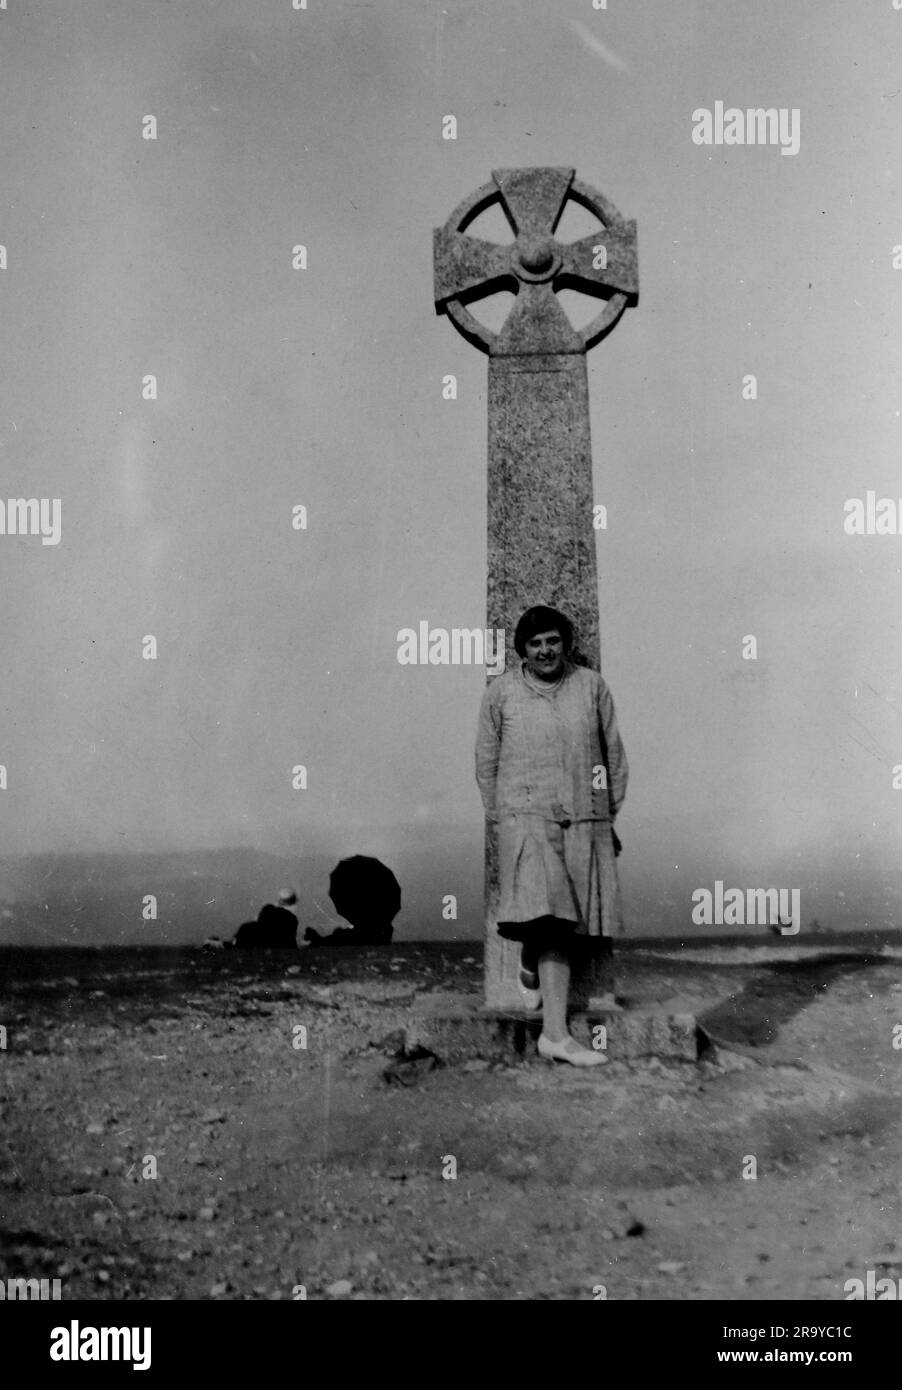 Eine Dame, die vor einem großen keltischen Denkmal steht, vermutlich das Gibbet-Kreuz, in Hindhead, Surrey. Foto aus einem Familienalbum mit Bildern, die hauptsächlich im Vereinigten Königreich aufgenommen wurden, um 1929. Die Familie lebte in Witley, Surrey, und hatte Verbindungen zum Militär. Stockfoto